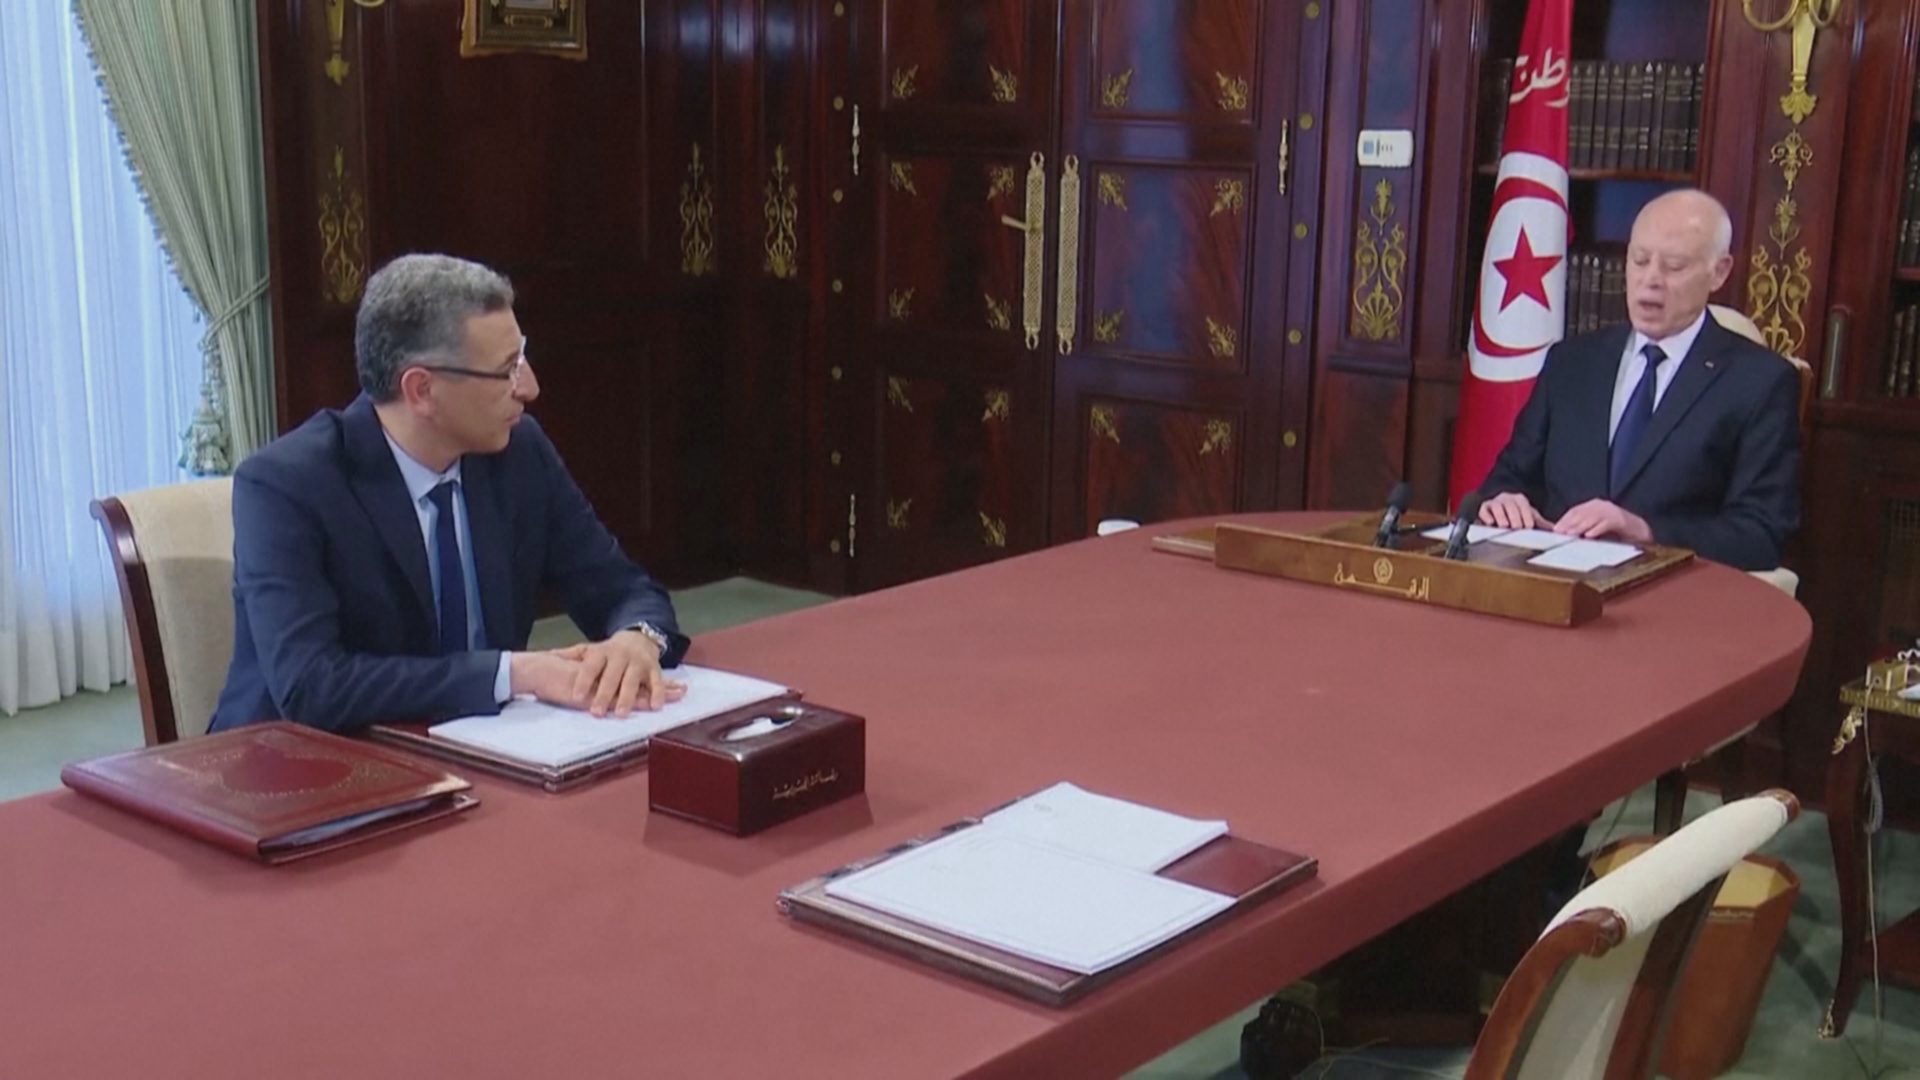 Президент Туниса обвинил политиков в «миграционном заговоре»